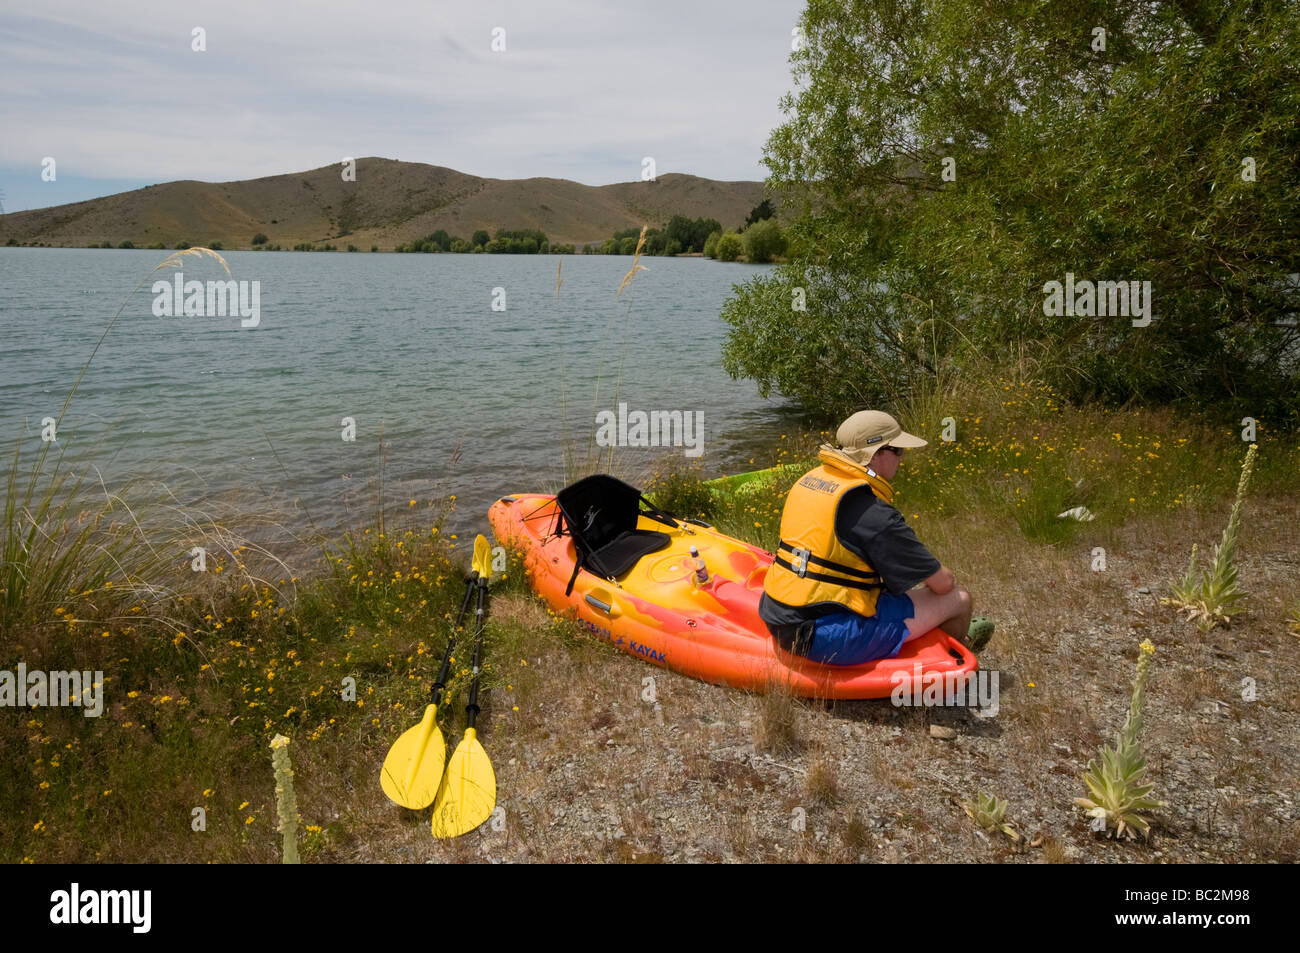 Adolescente descansando con kayak por el brazo del lago Ruataniwha Wairepo, cerca de Twizel Foto de stock